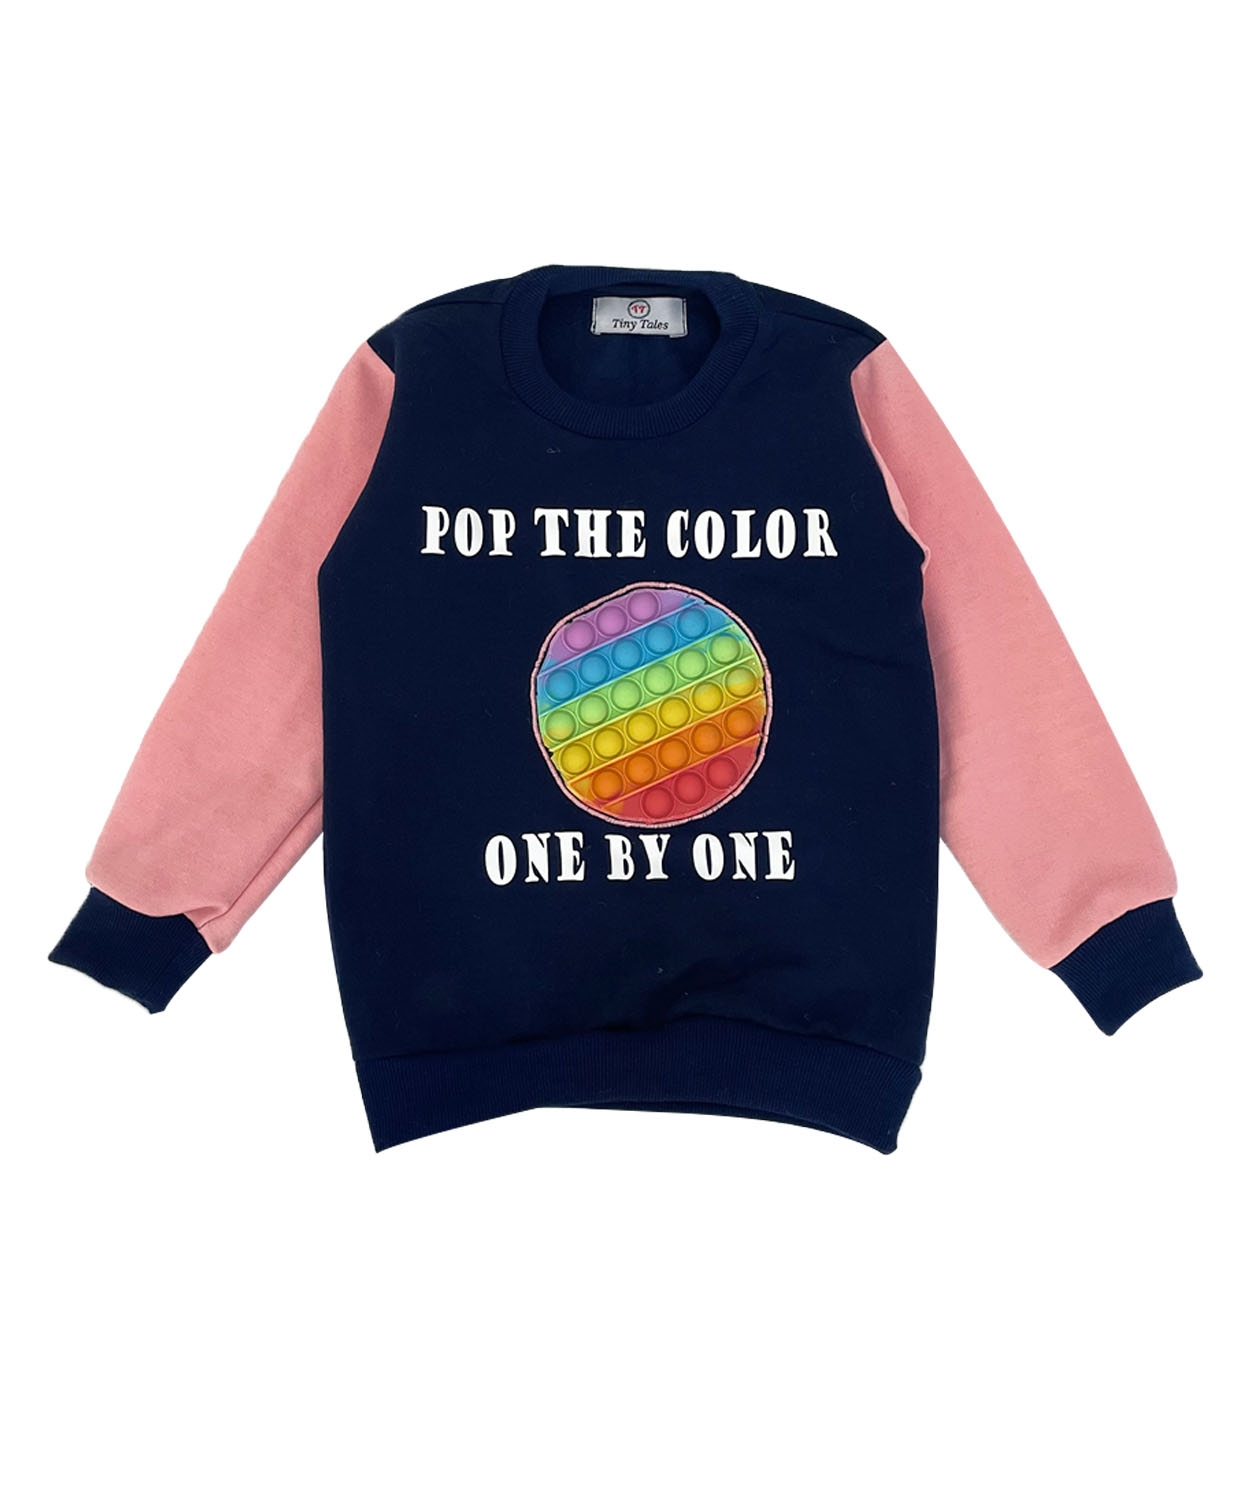 Personalised Color Block Pop It Sweatshirt